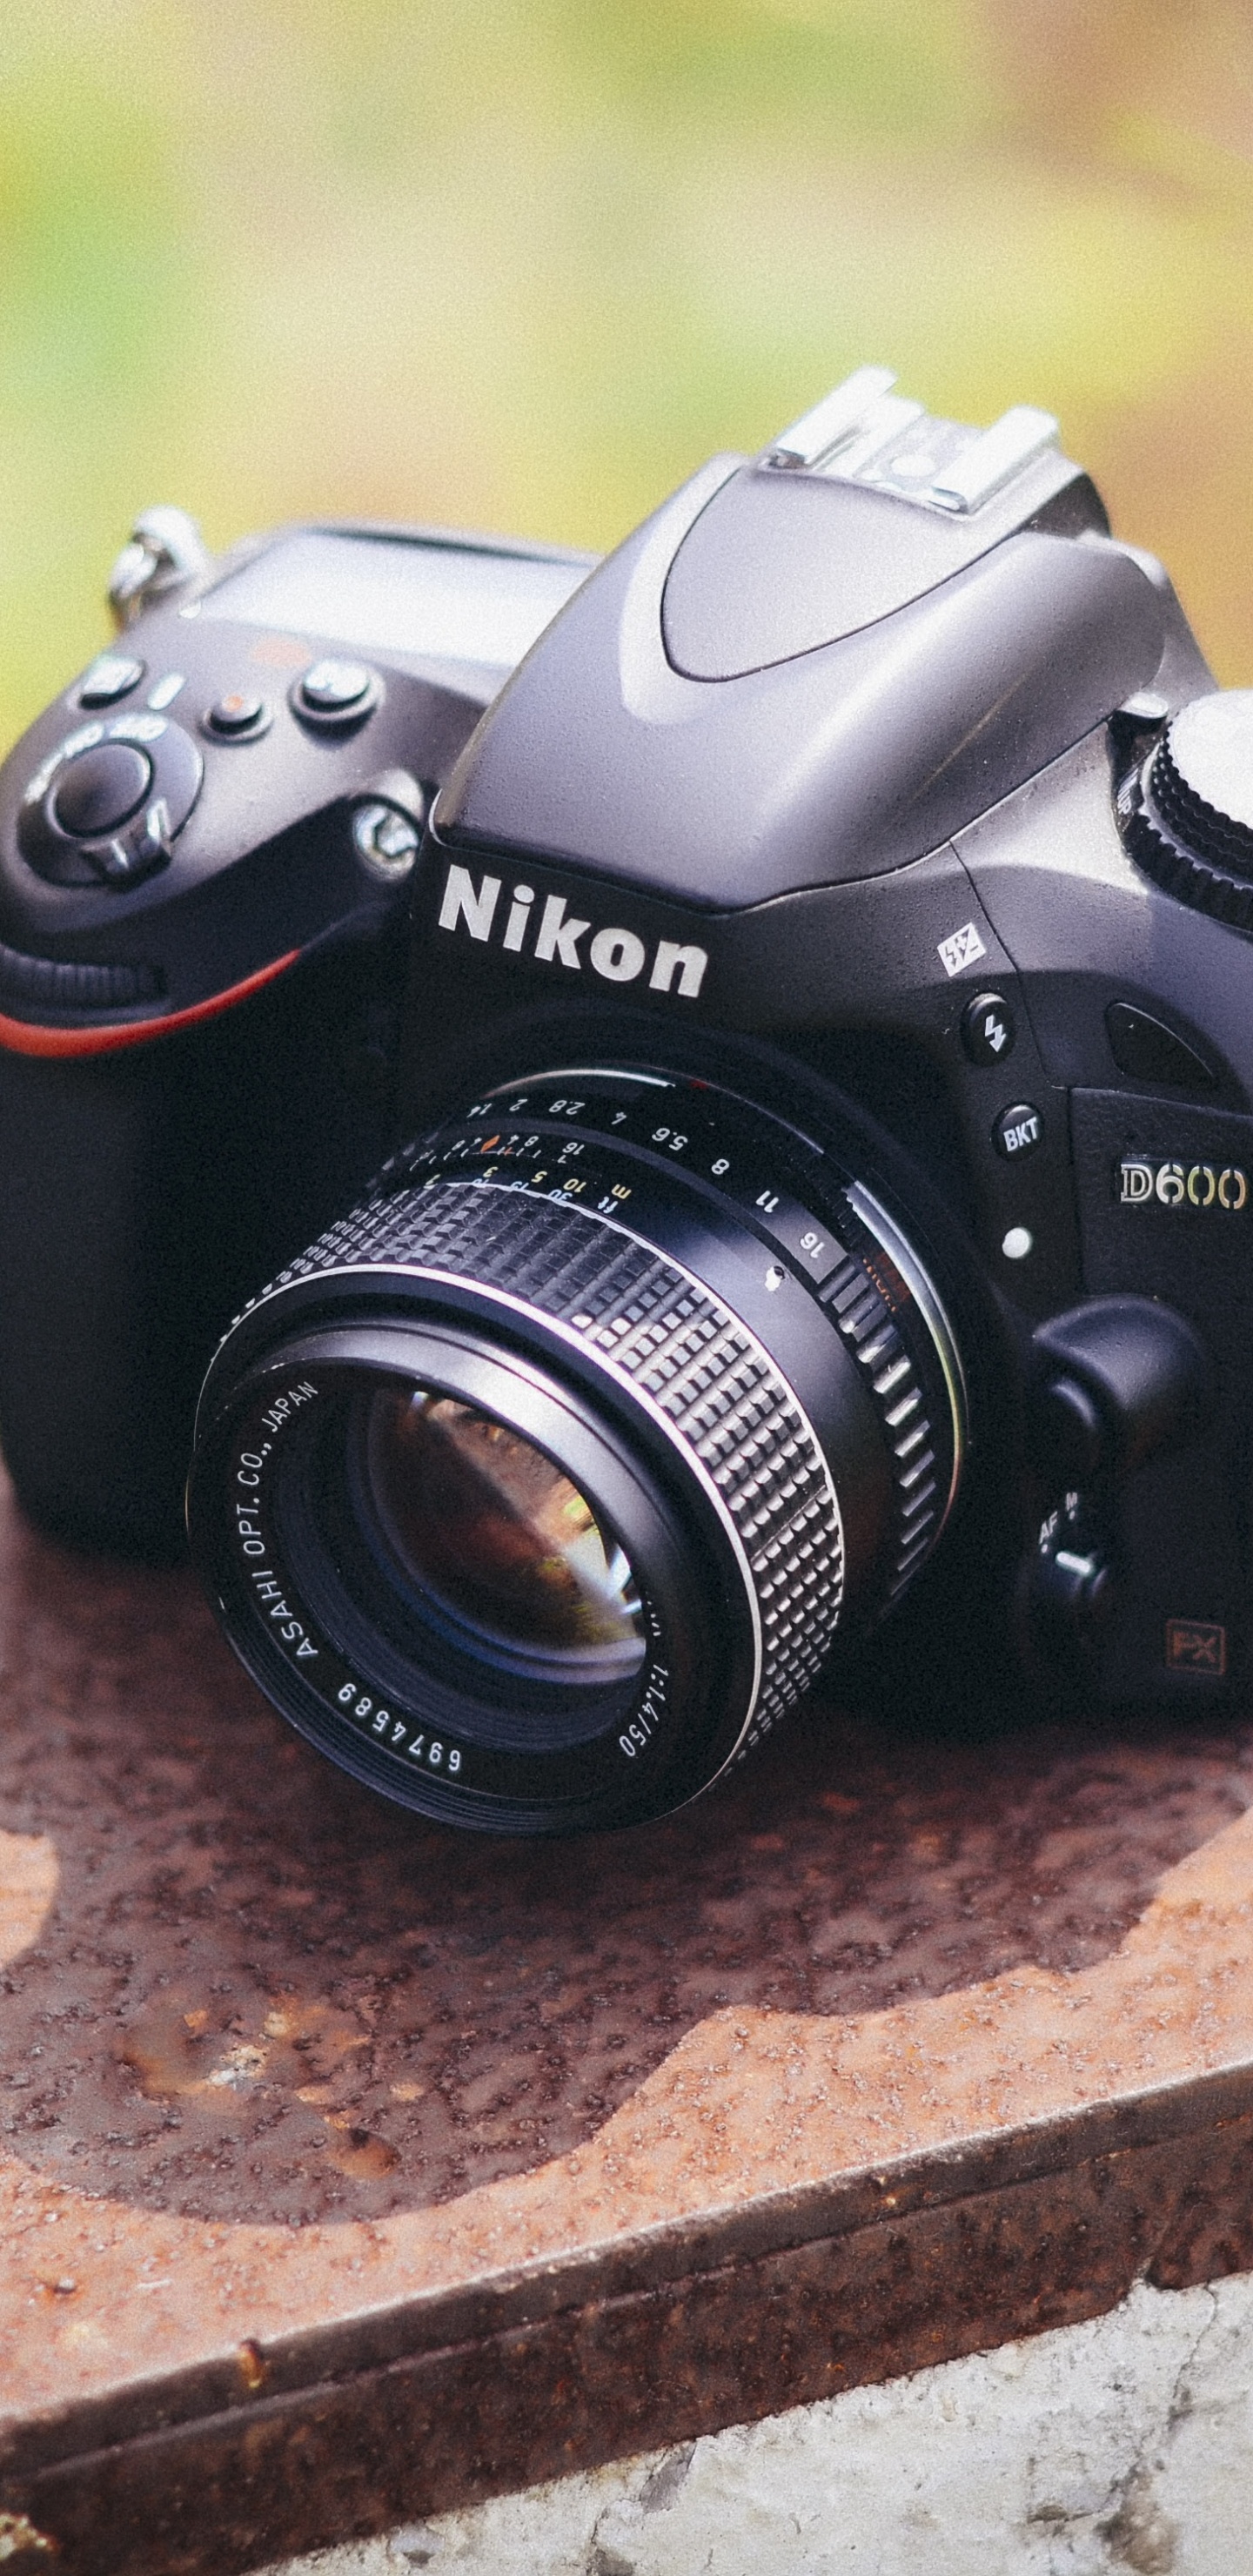 Schwarze Nikon Dslr Kamera Auf Brauner Betonoberfläche. Wallpaper in 1440x2960 Resolution